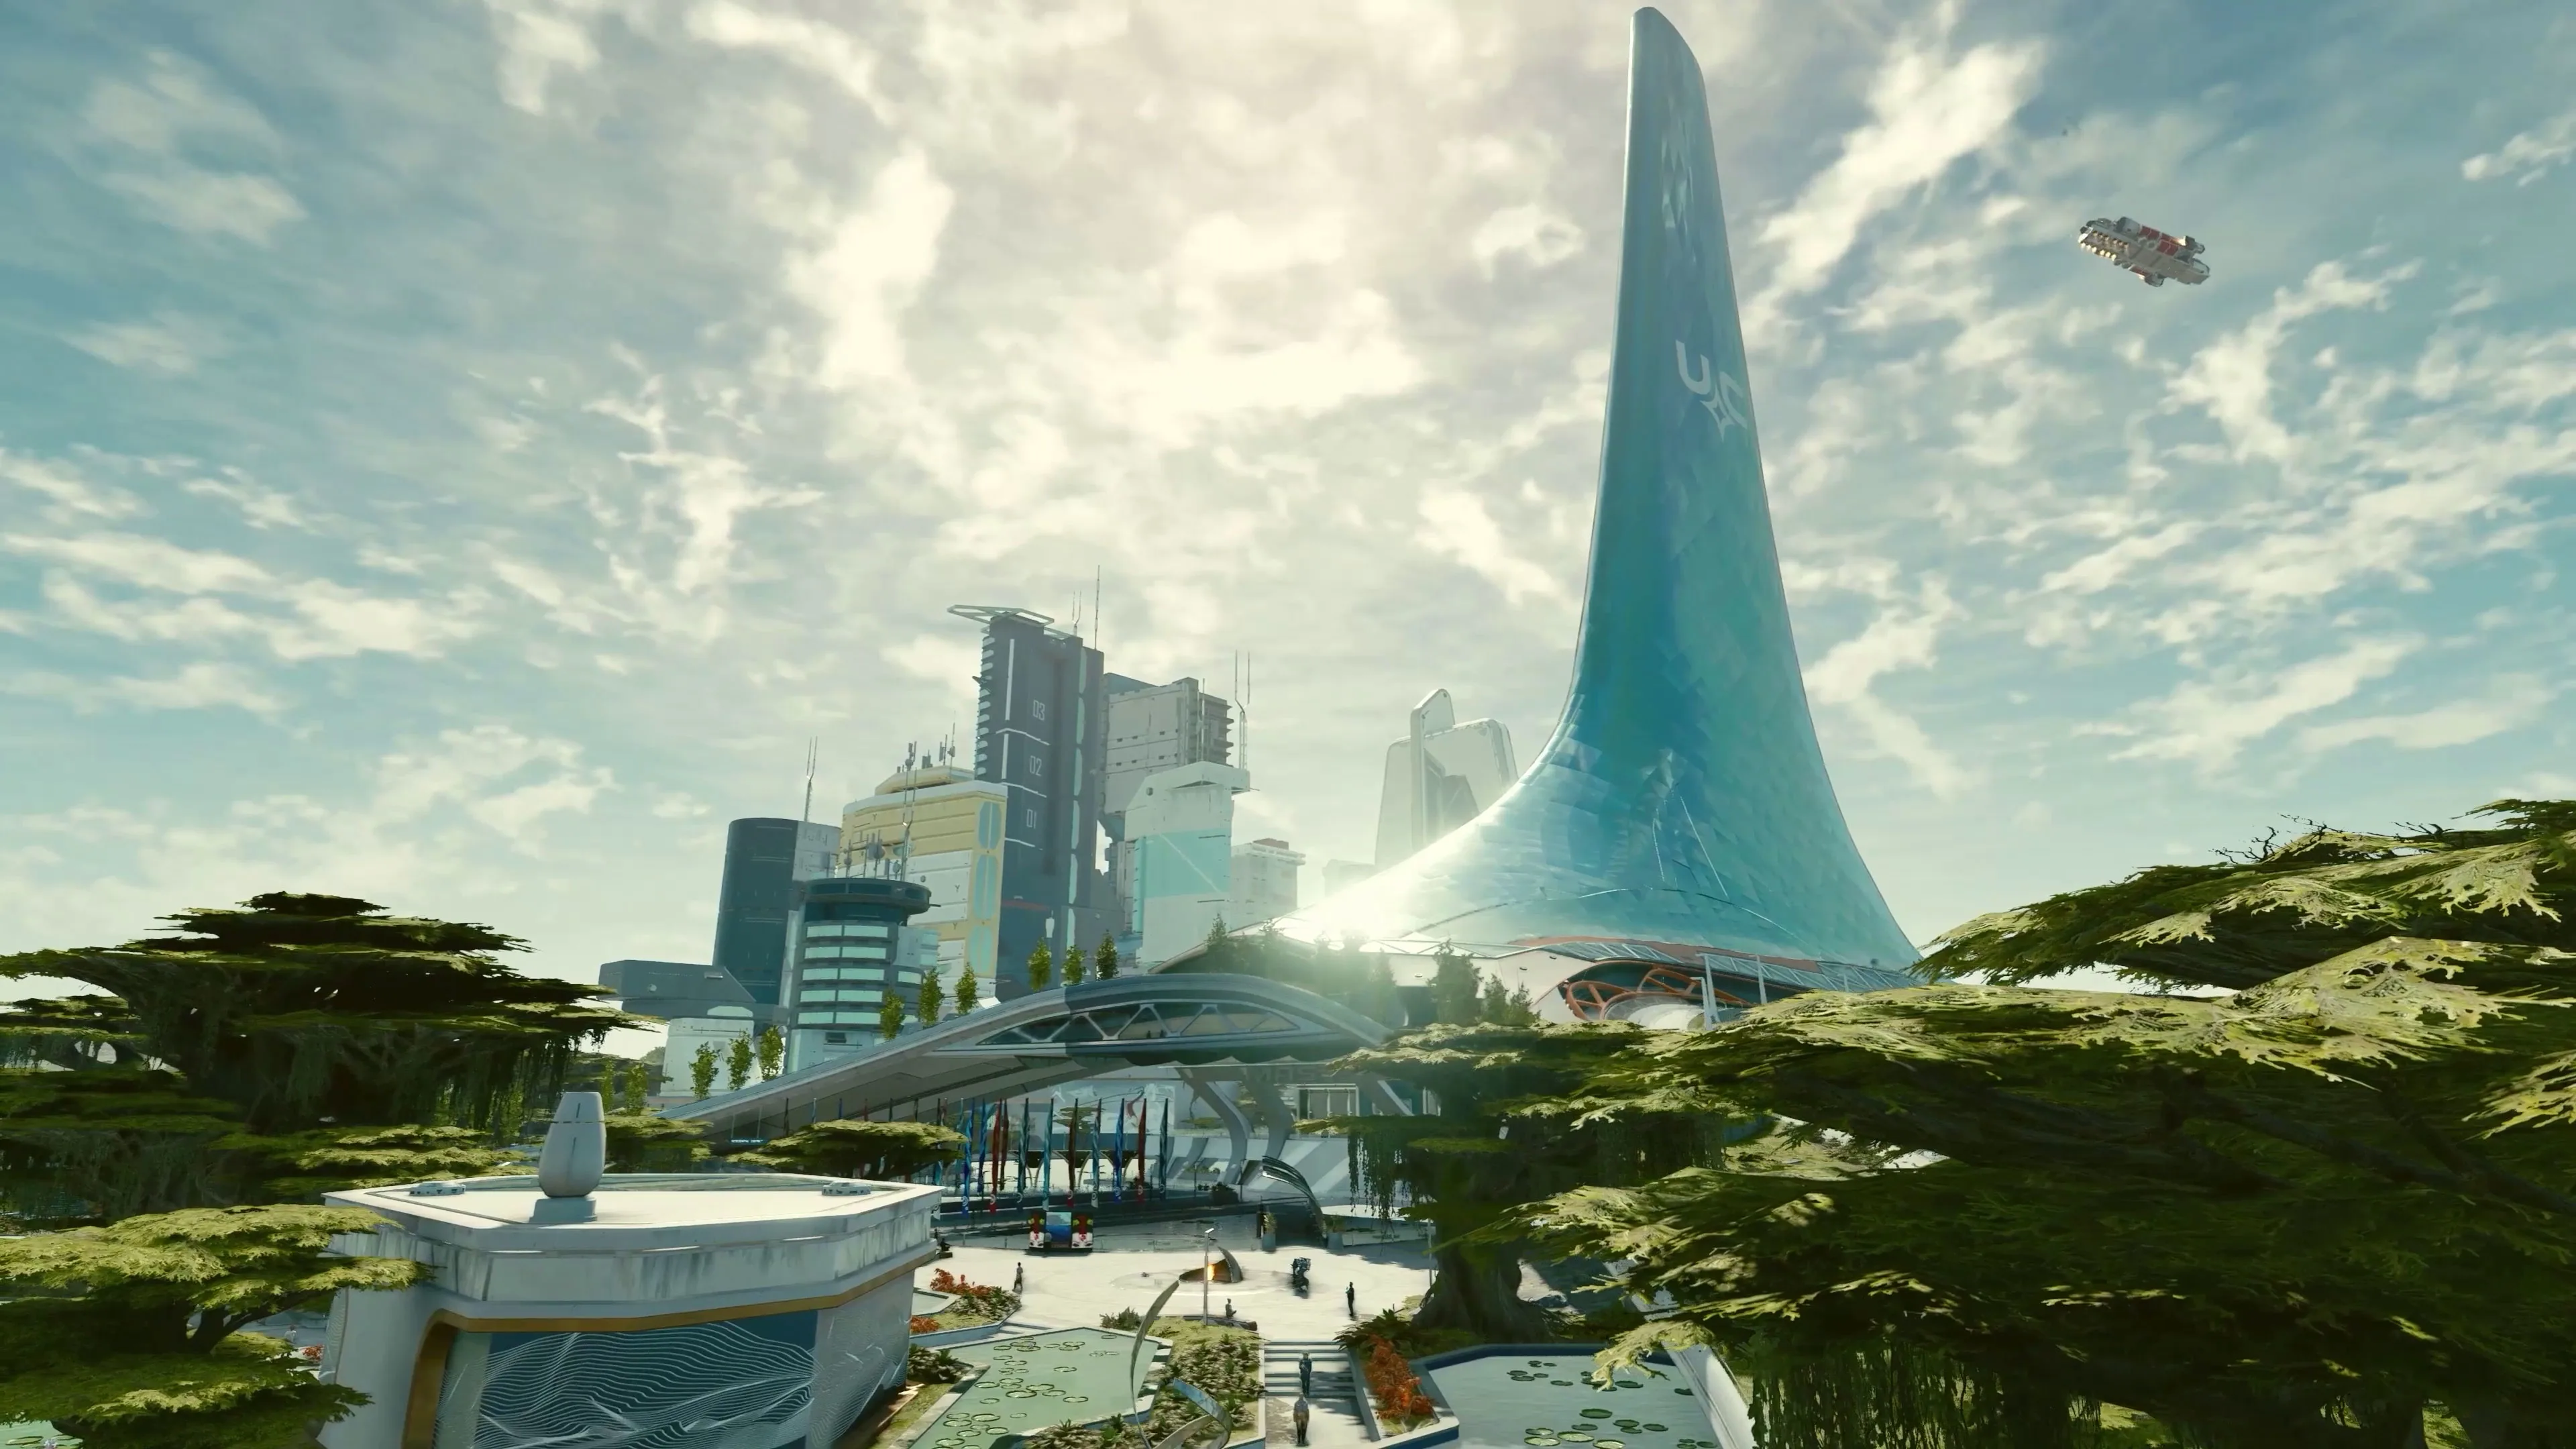 View of New Atlantis